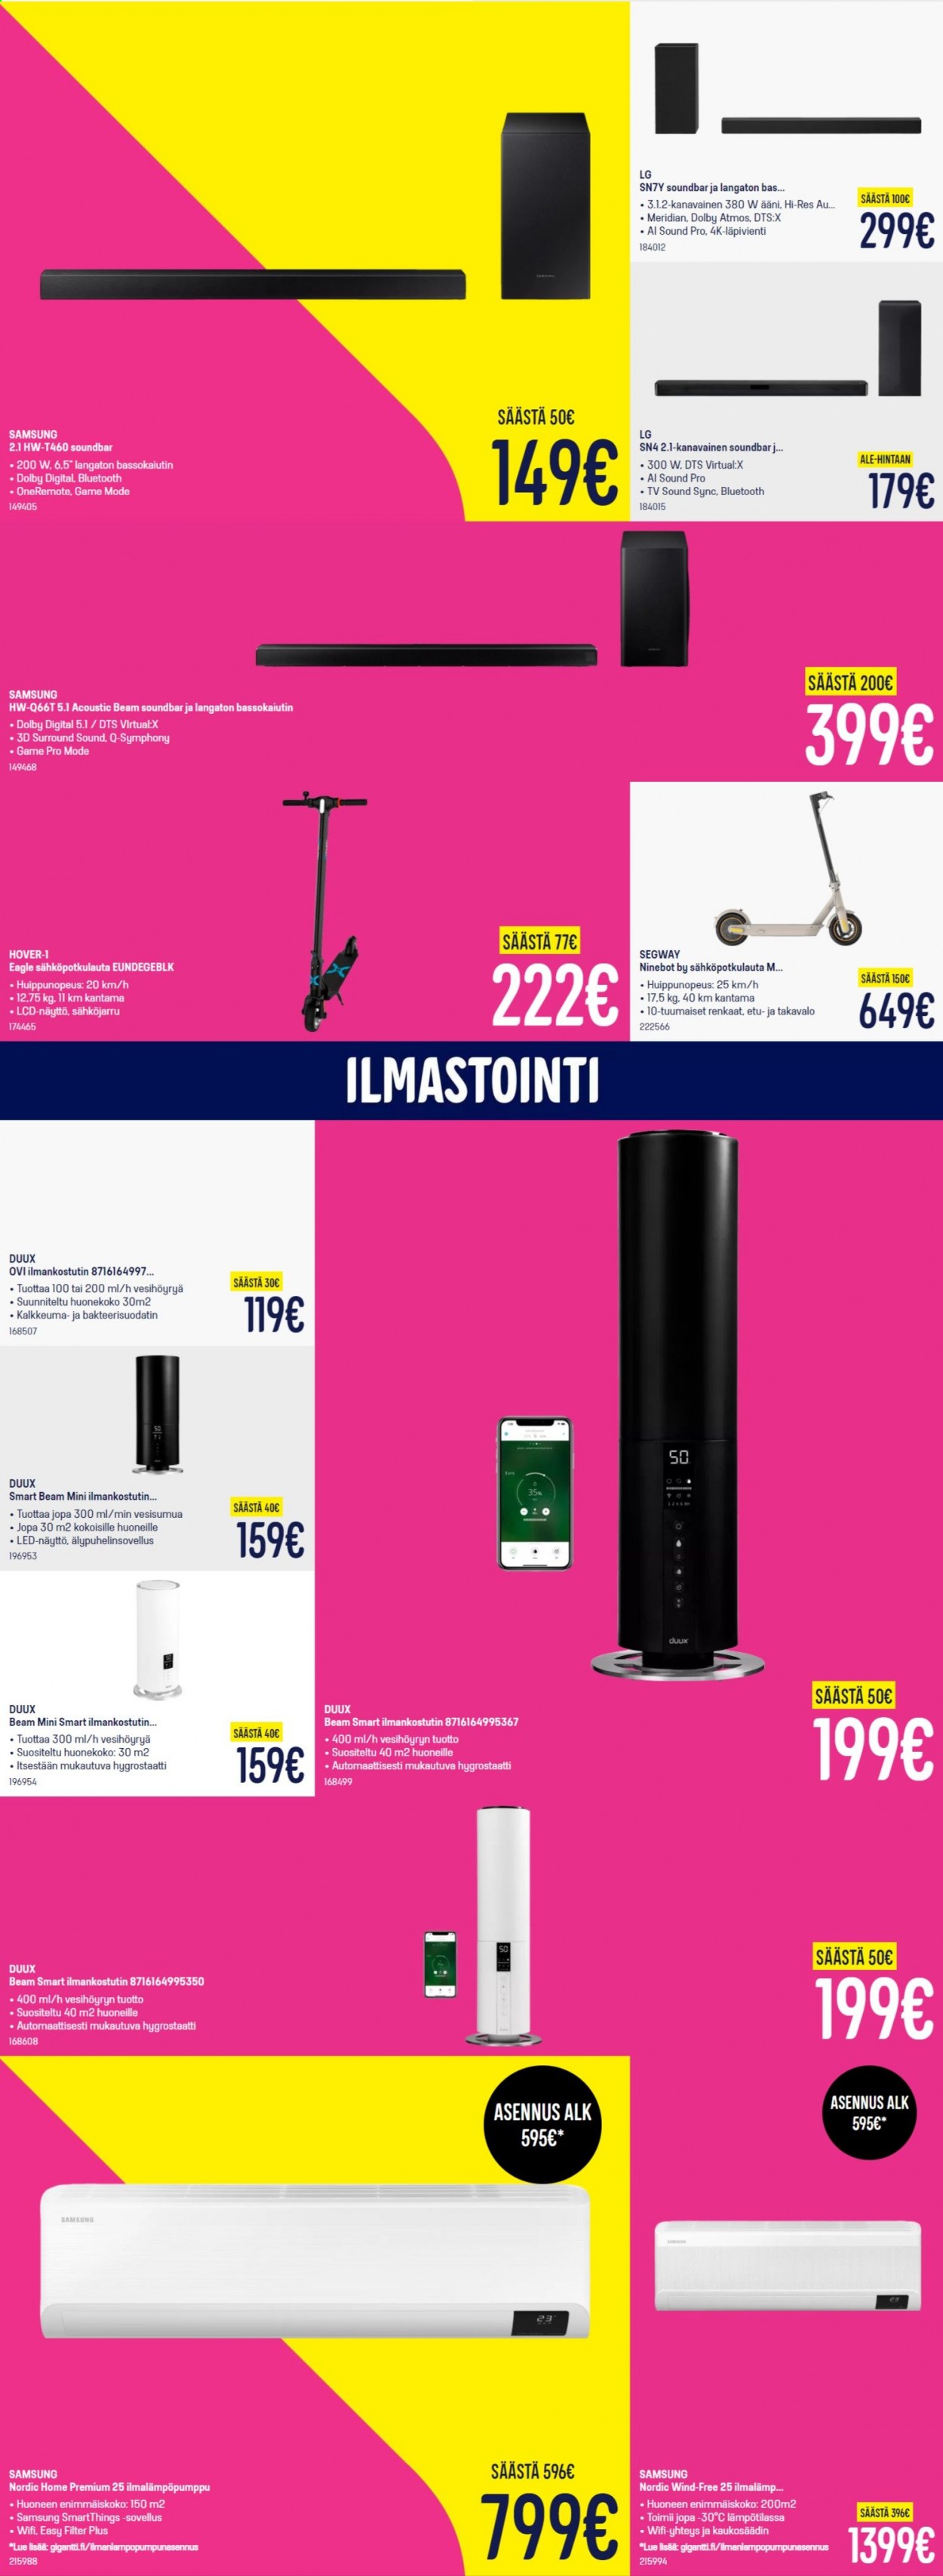 thumbnail - Gigantti tarjoukset  - 10.01.2021 - 17.01.2021 - Tarjoustuotteet - LG, Samsung, TV, soundbar, ilmastointi, Hover. Sivu 11.